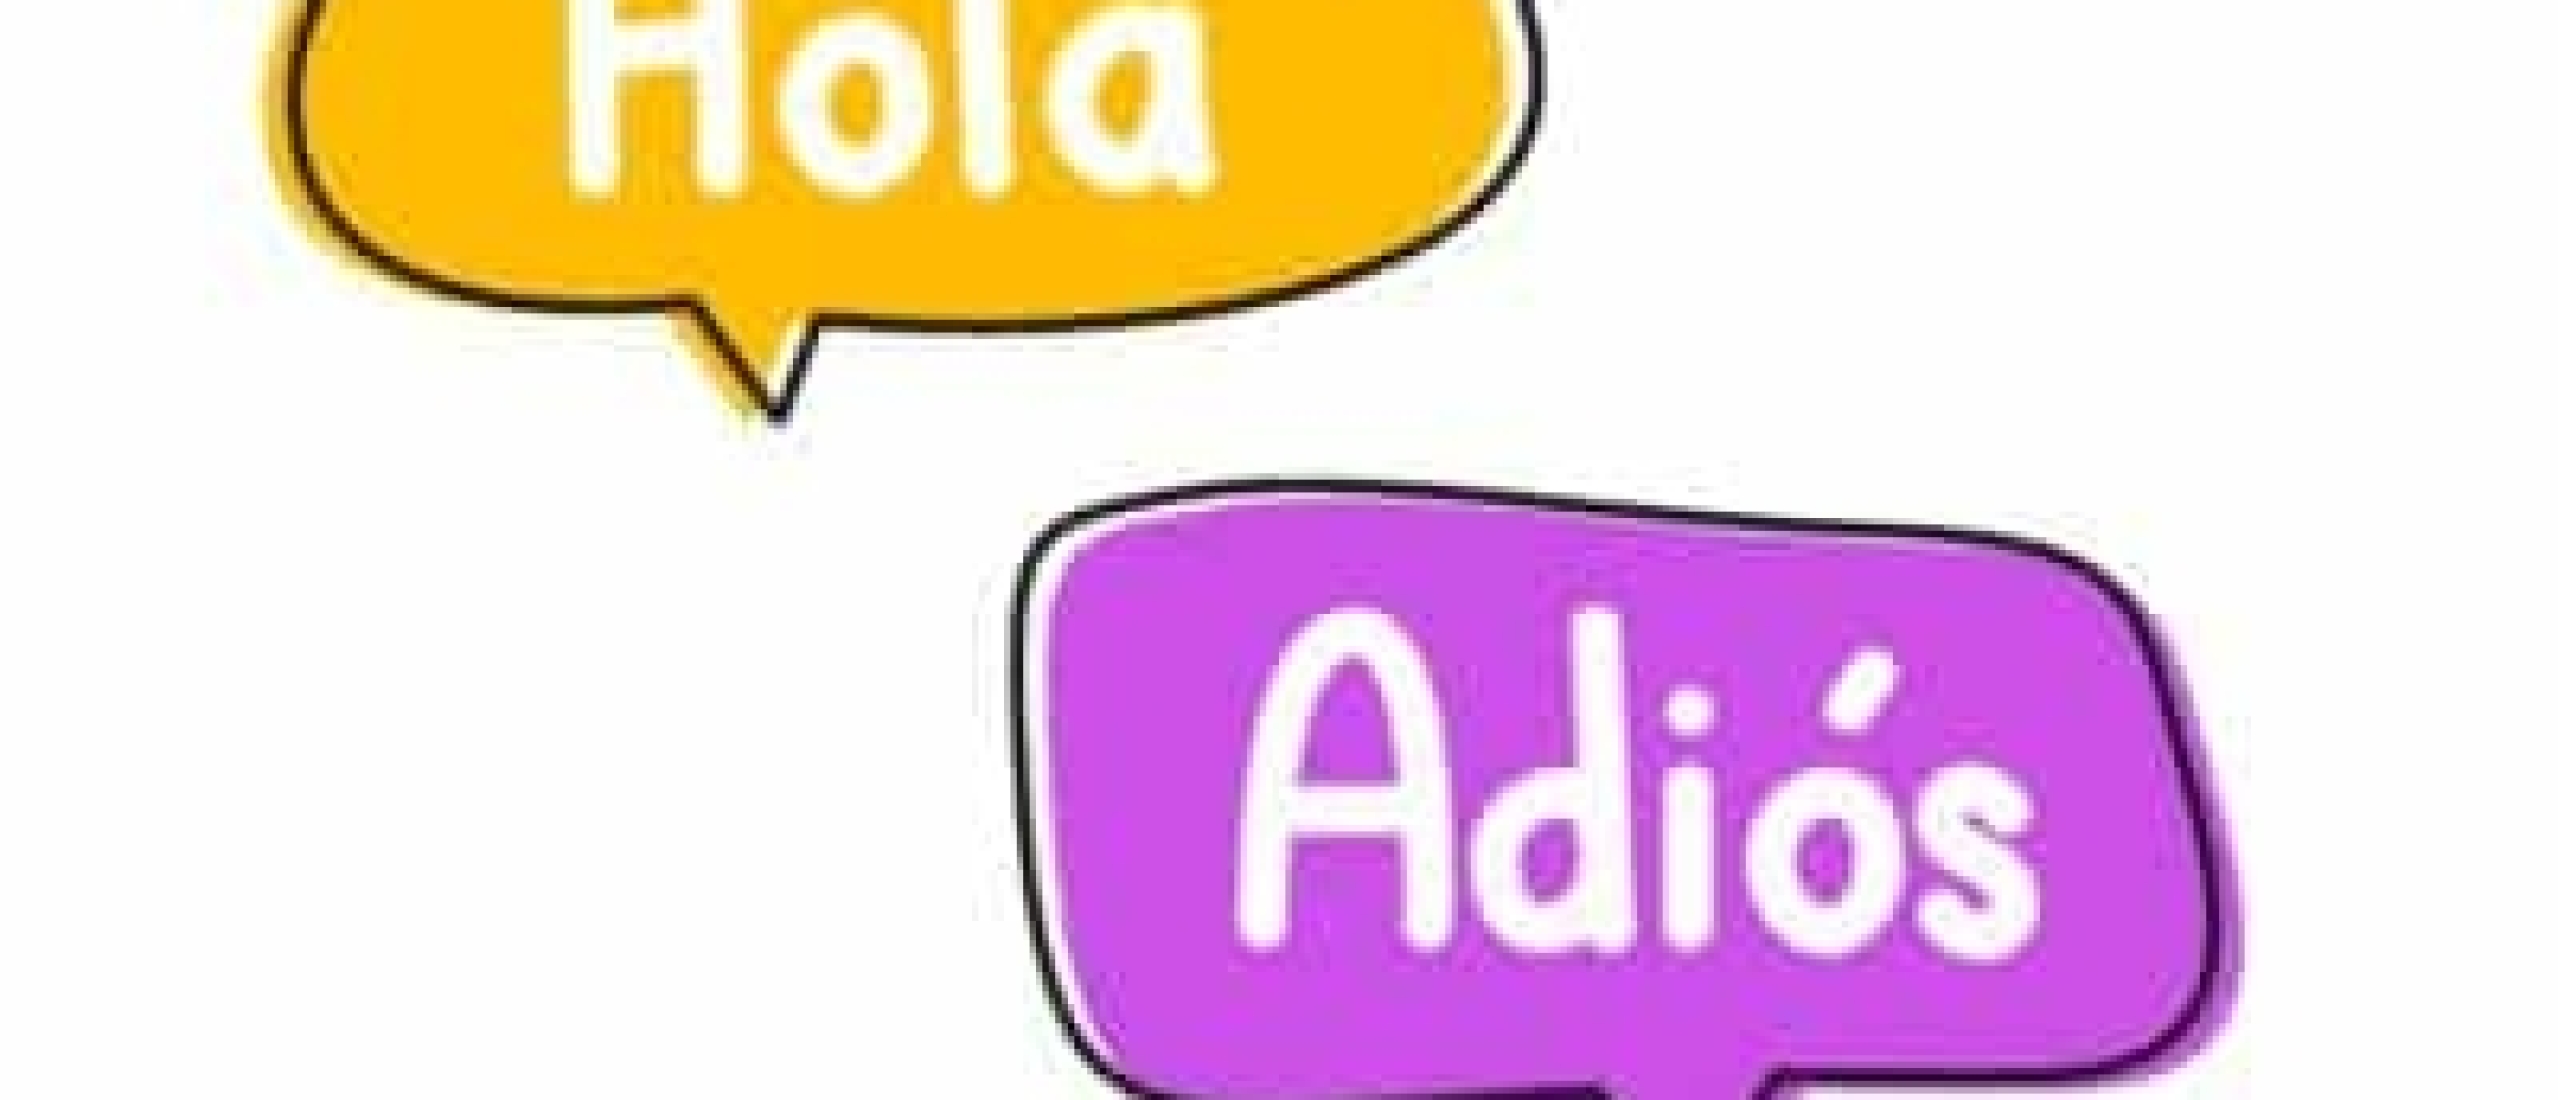 De mooiste Spaanse woorden en uitdrukkingen om te kennen